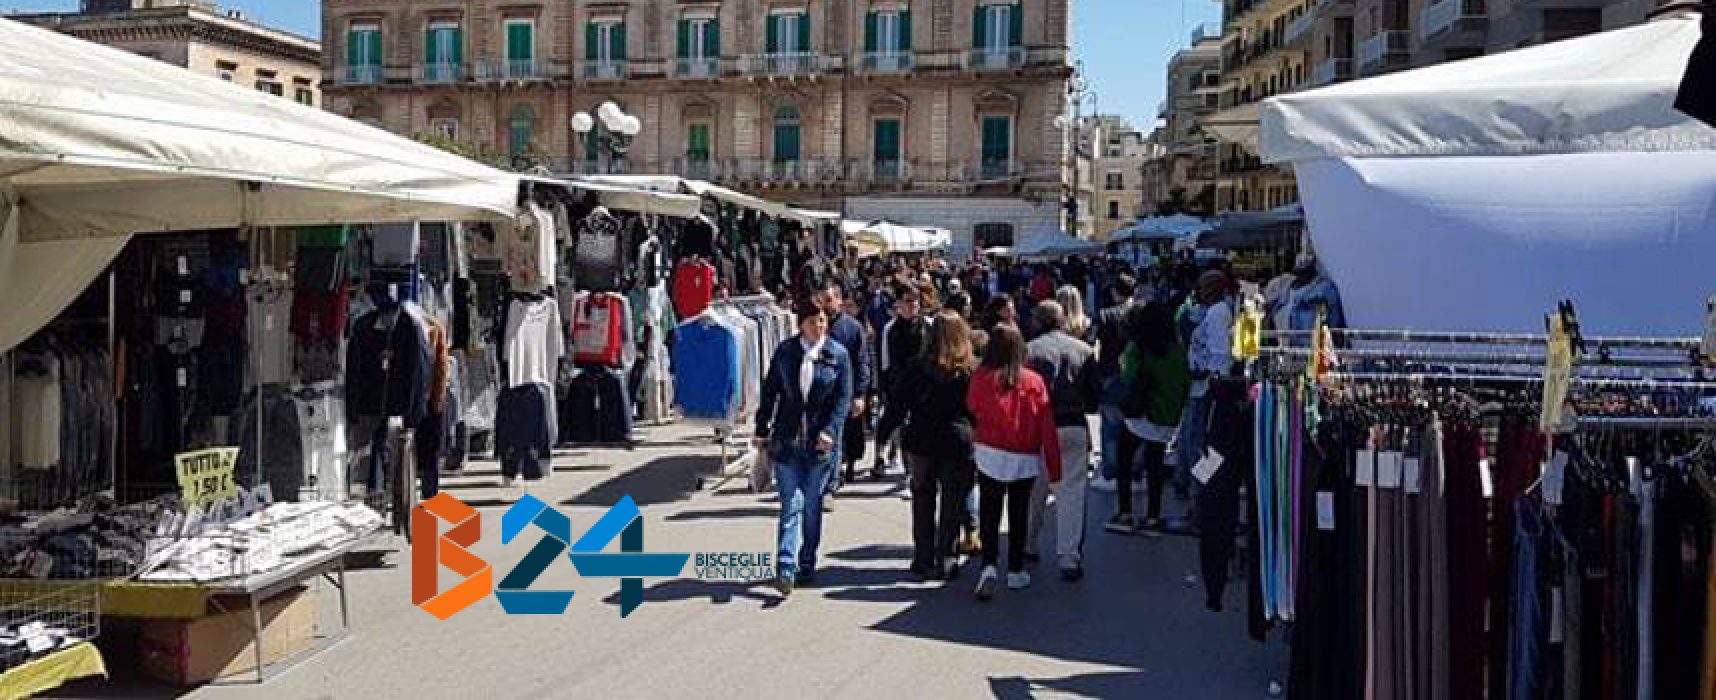 Oggi primo mercato straordinario dicembrino in piazza Vittorio Emanuele II